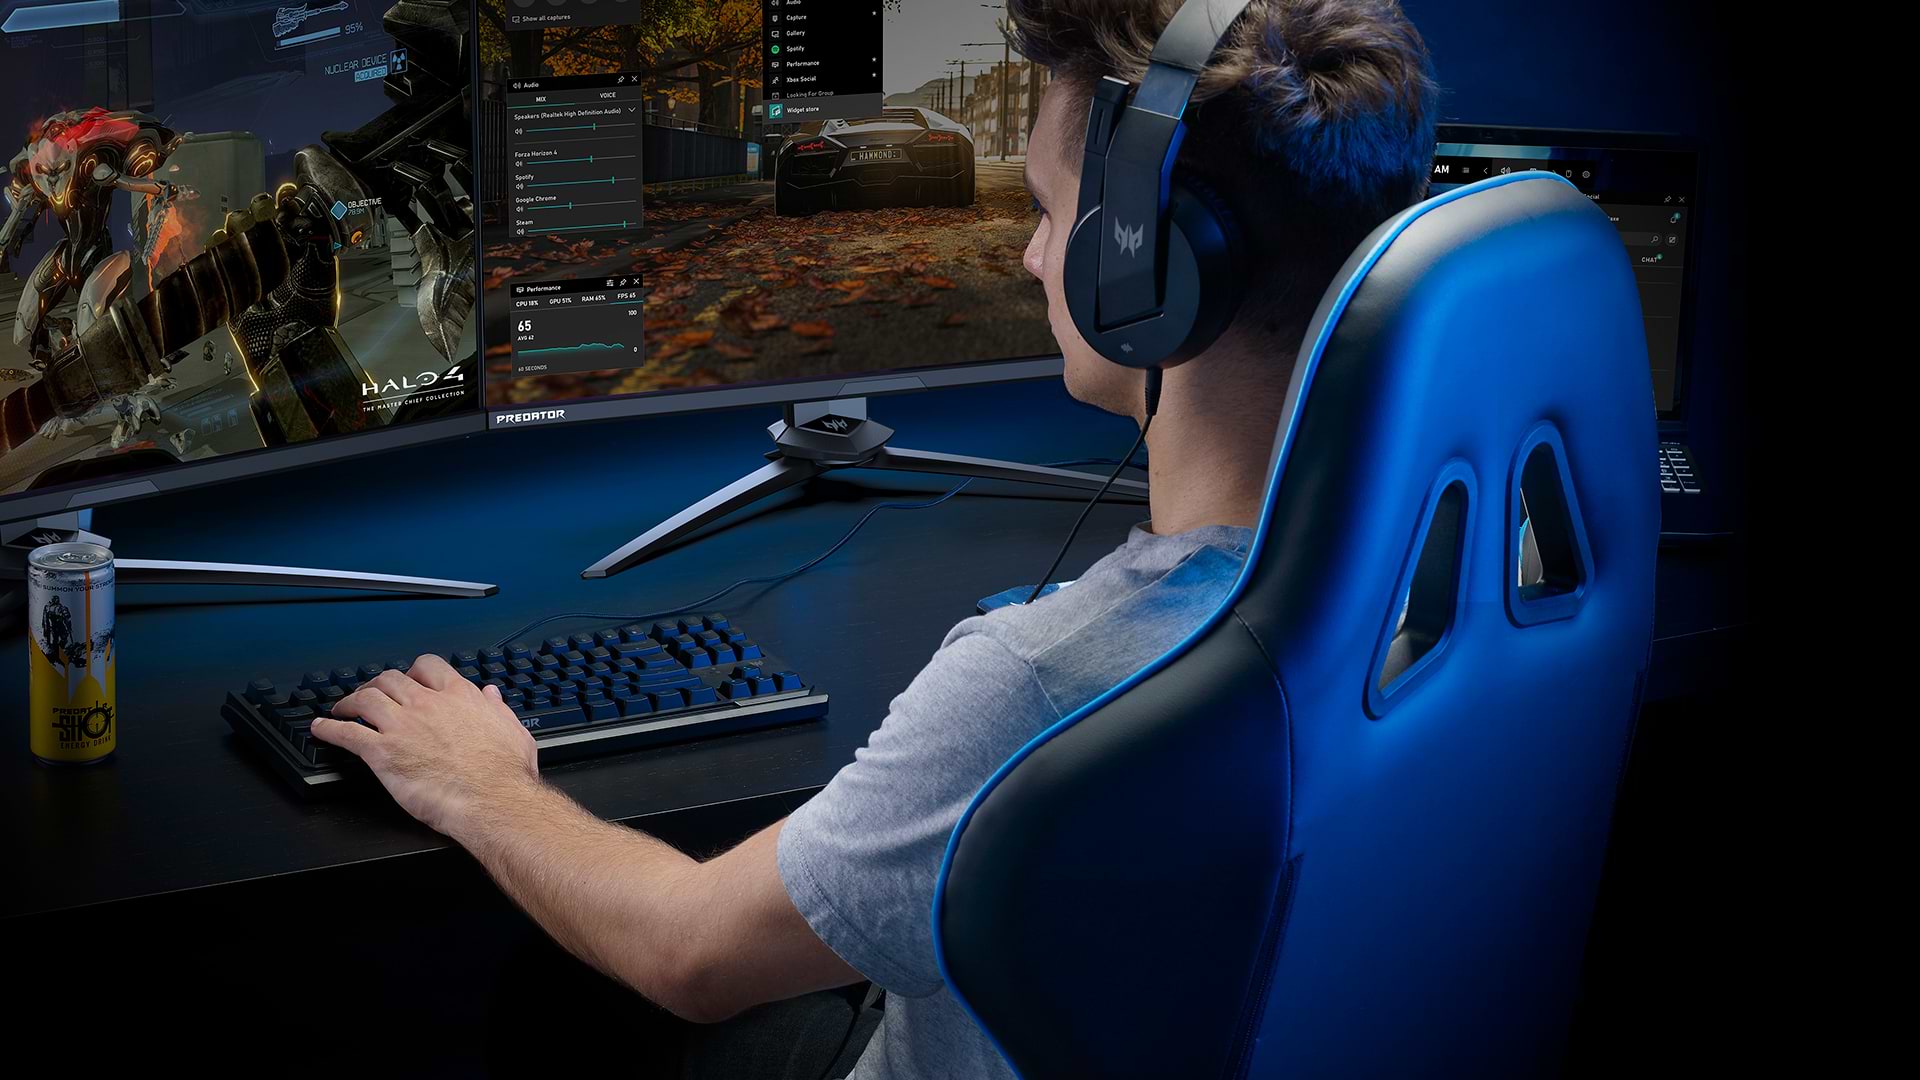 כיסא גיימינג Acer Predator Gaming Chair GP.G0Z11.001 - צבע שחור וכחול שנה אחריות ע"י היבואן הרשמי